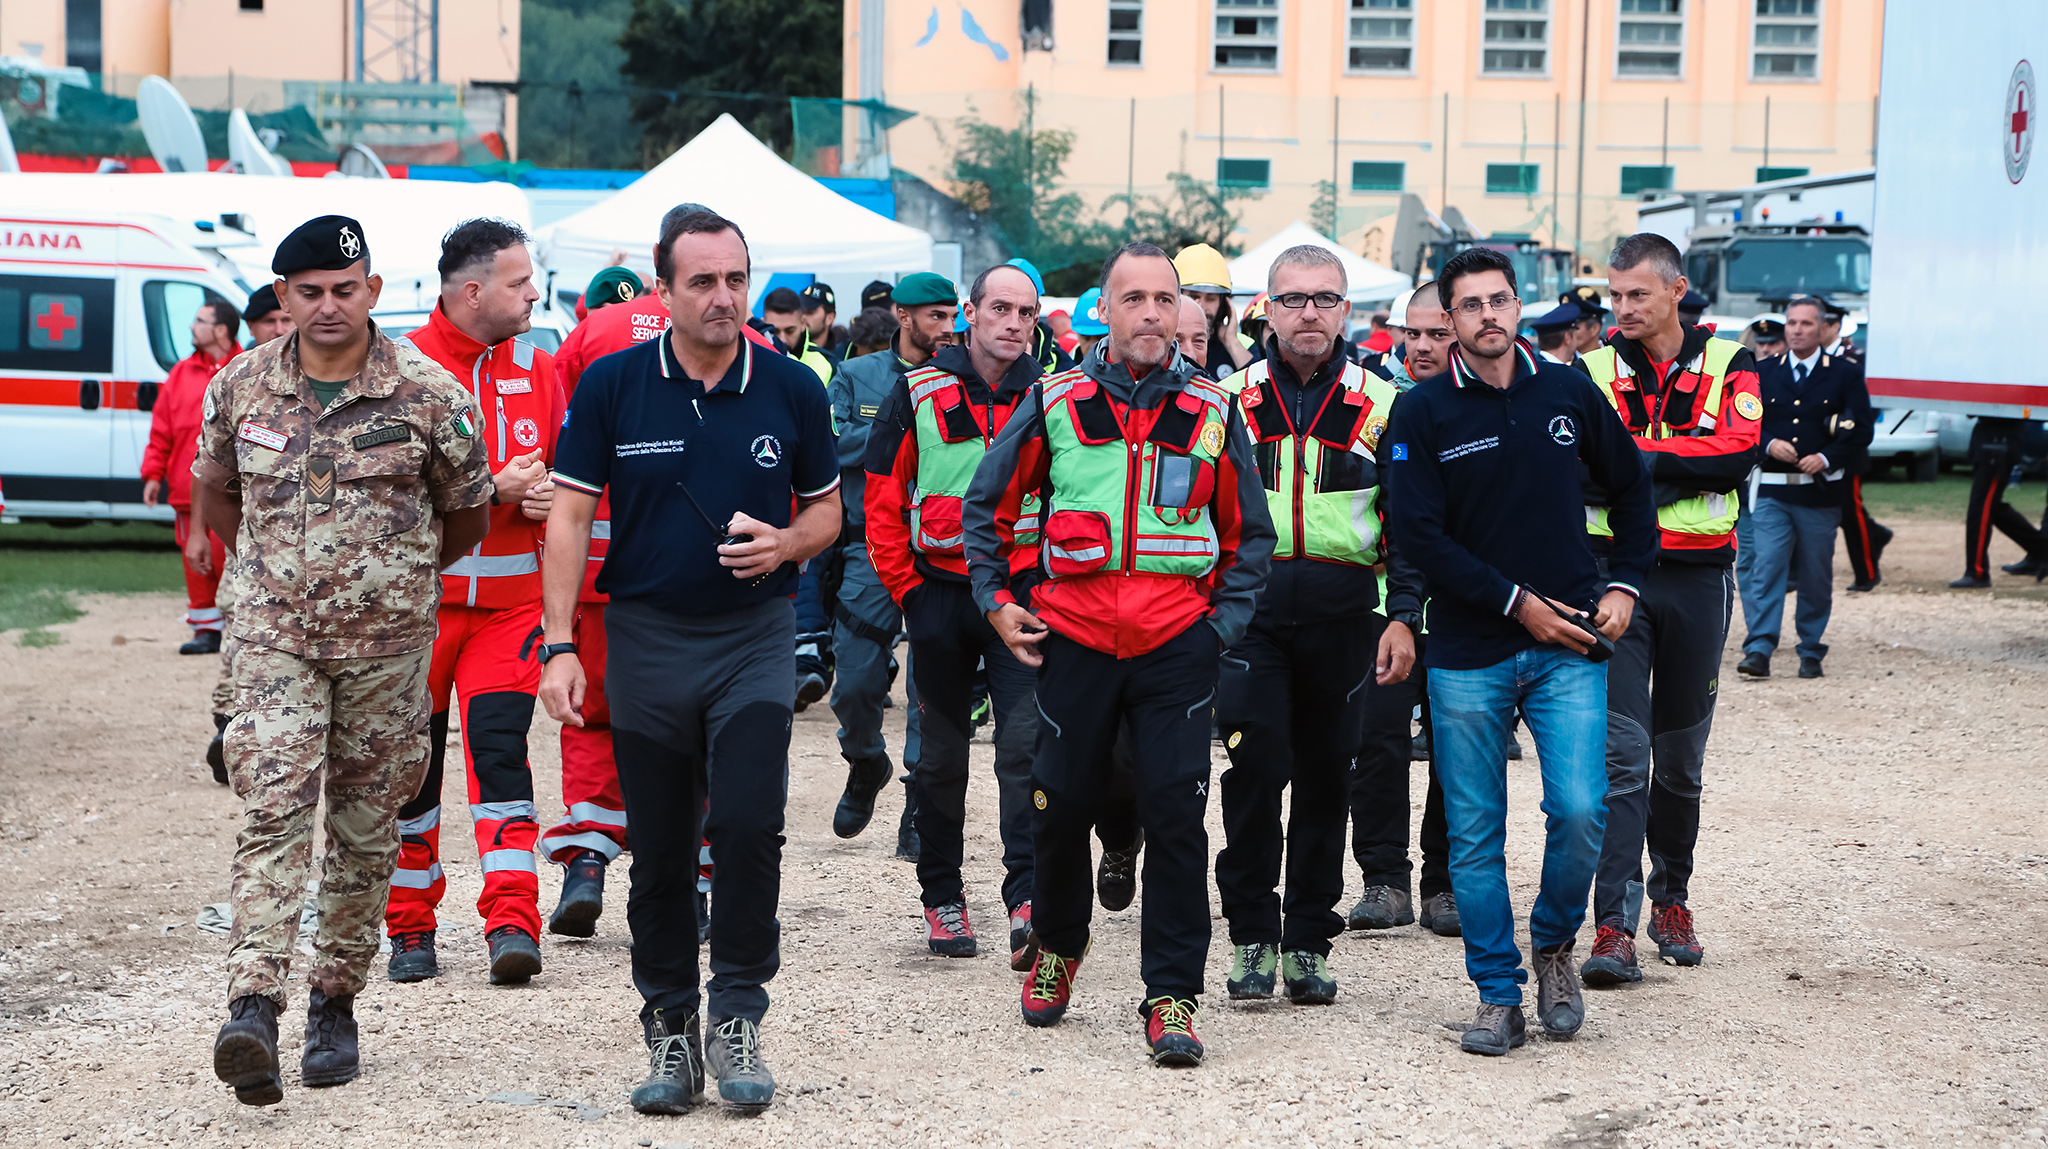 Amatrice, Rieti - Squadre di soccorritori dopo il terremoto del 24 agosto 2016